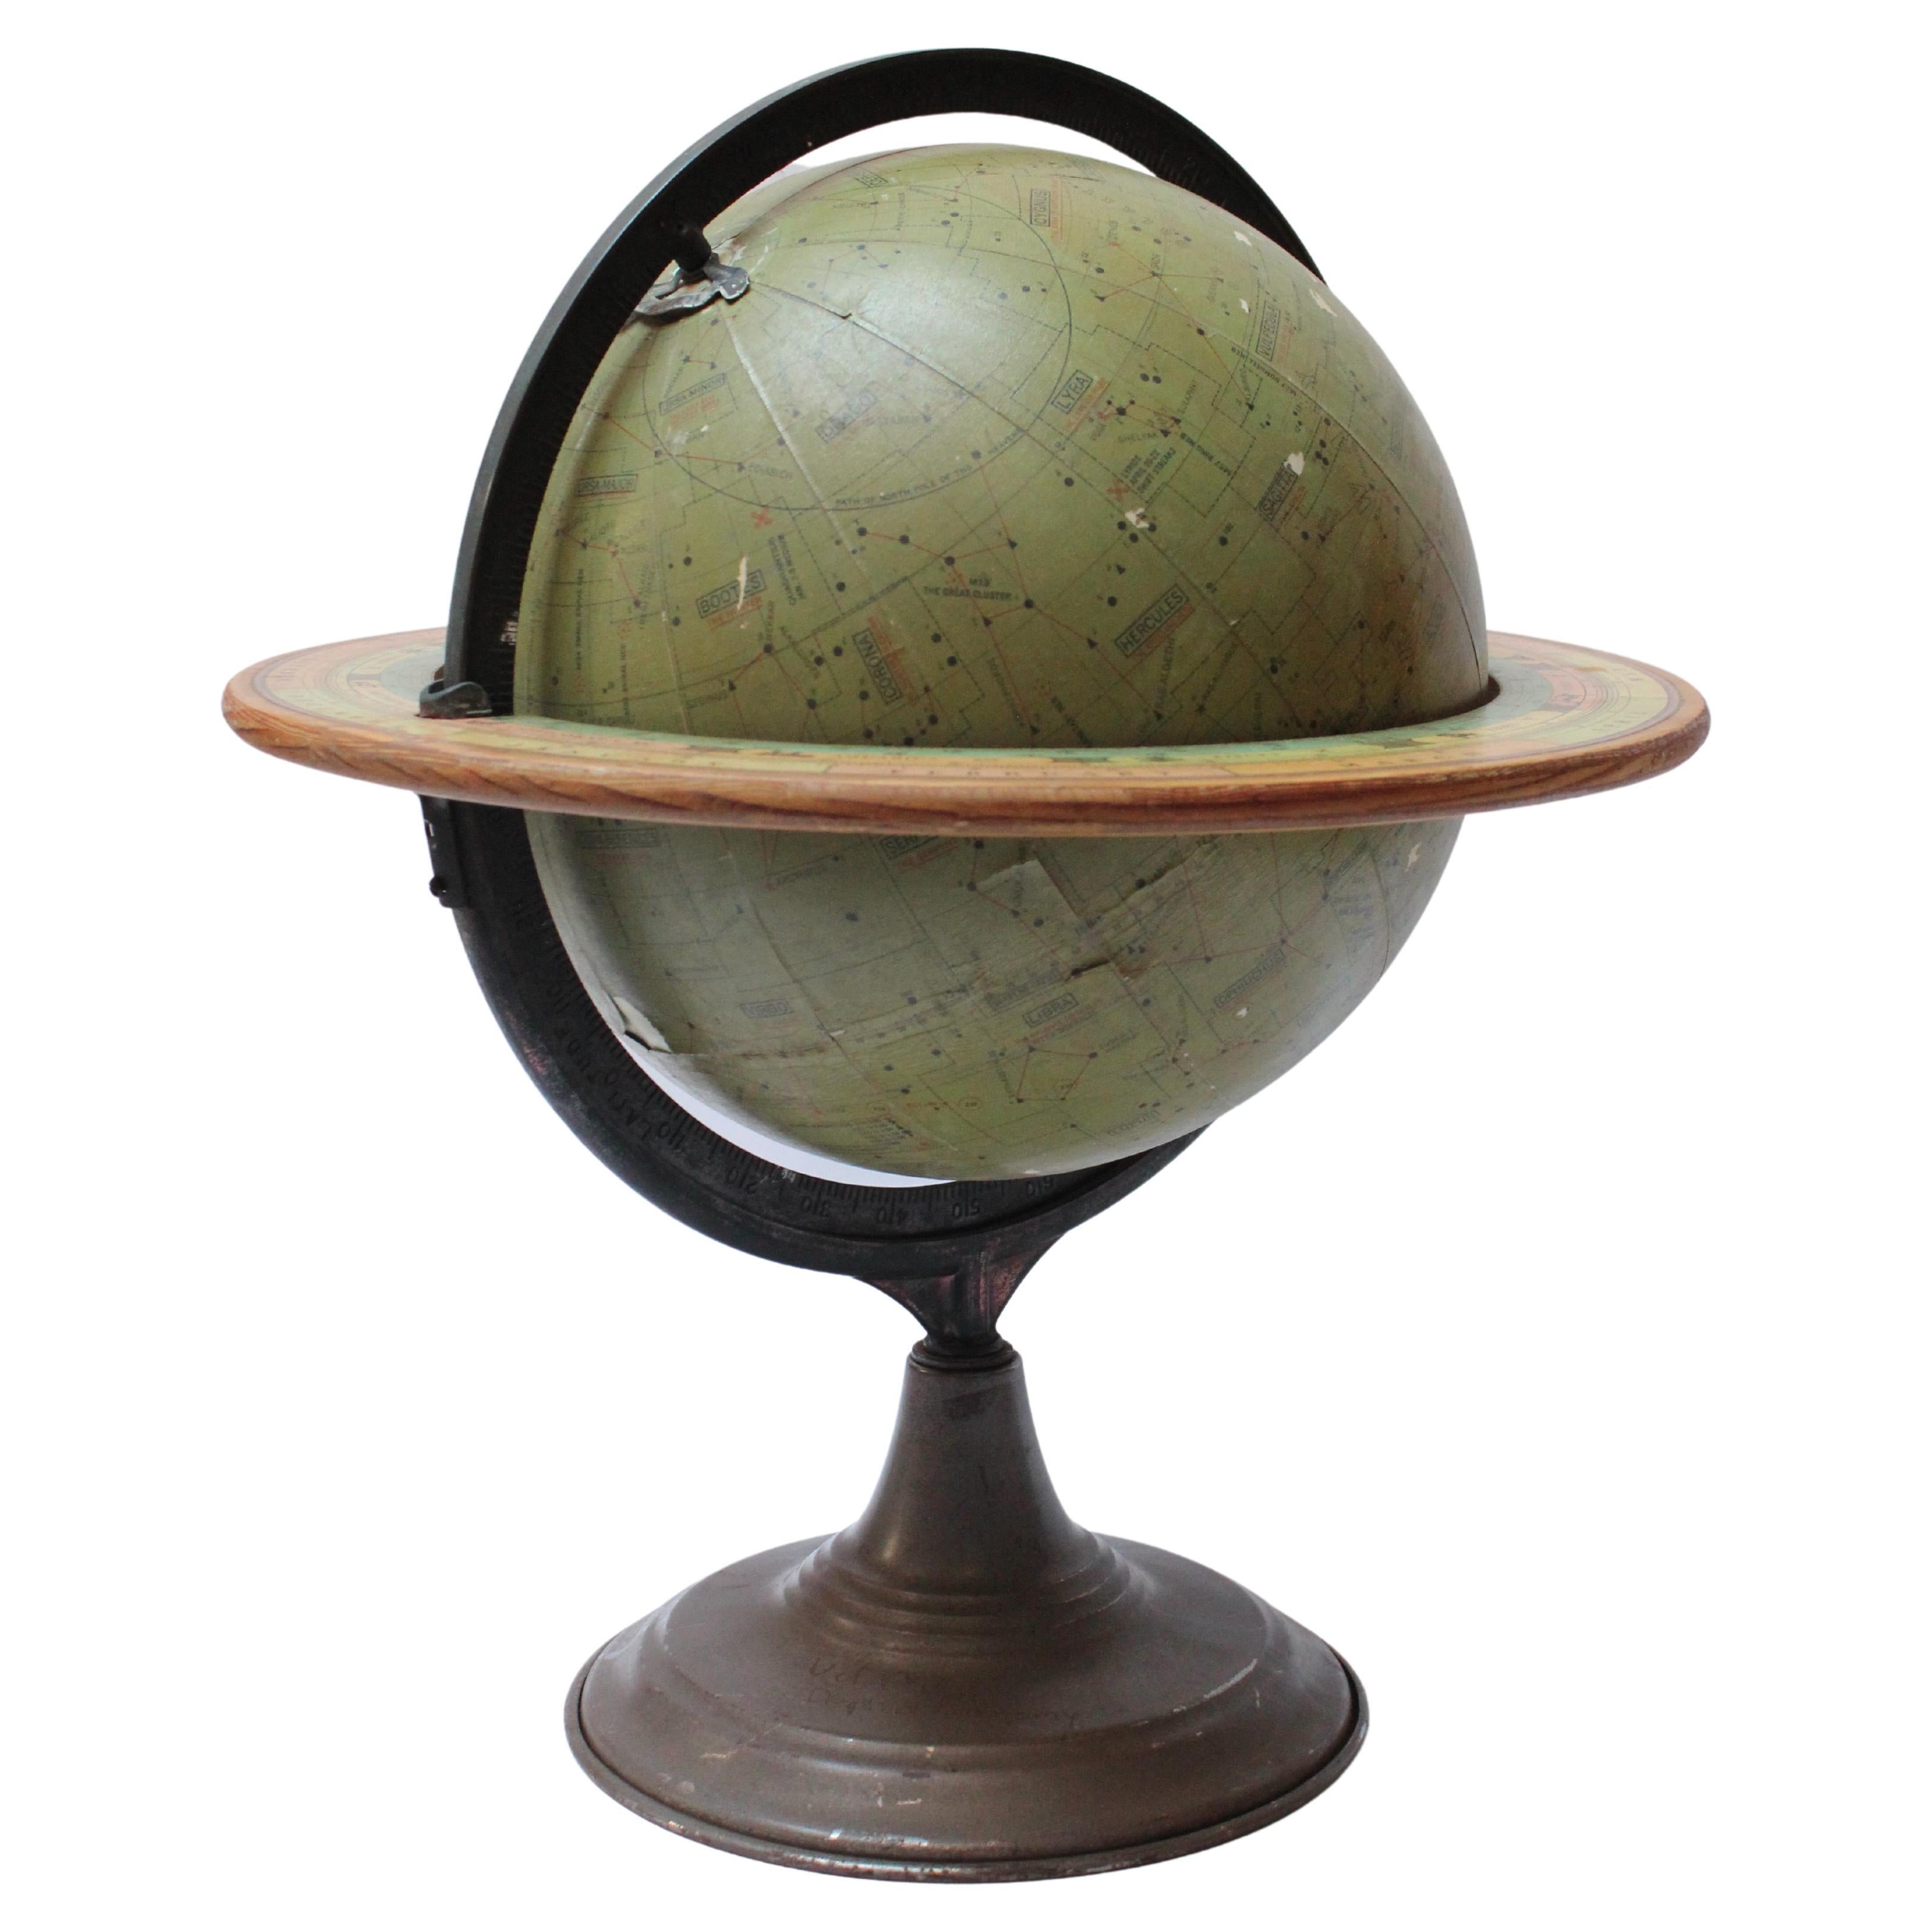 Dennoyer-Geppert Celestial Globe, Celestial Globe